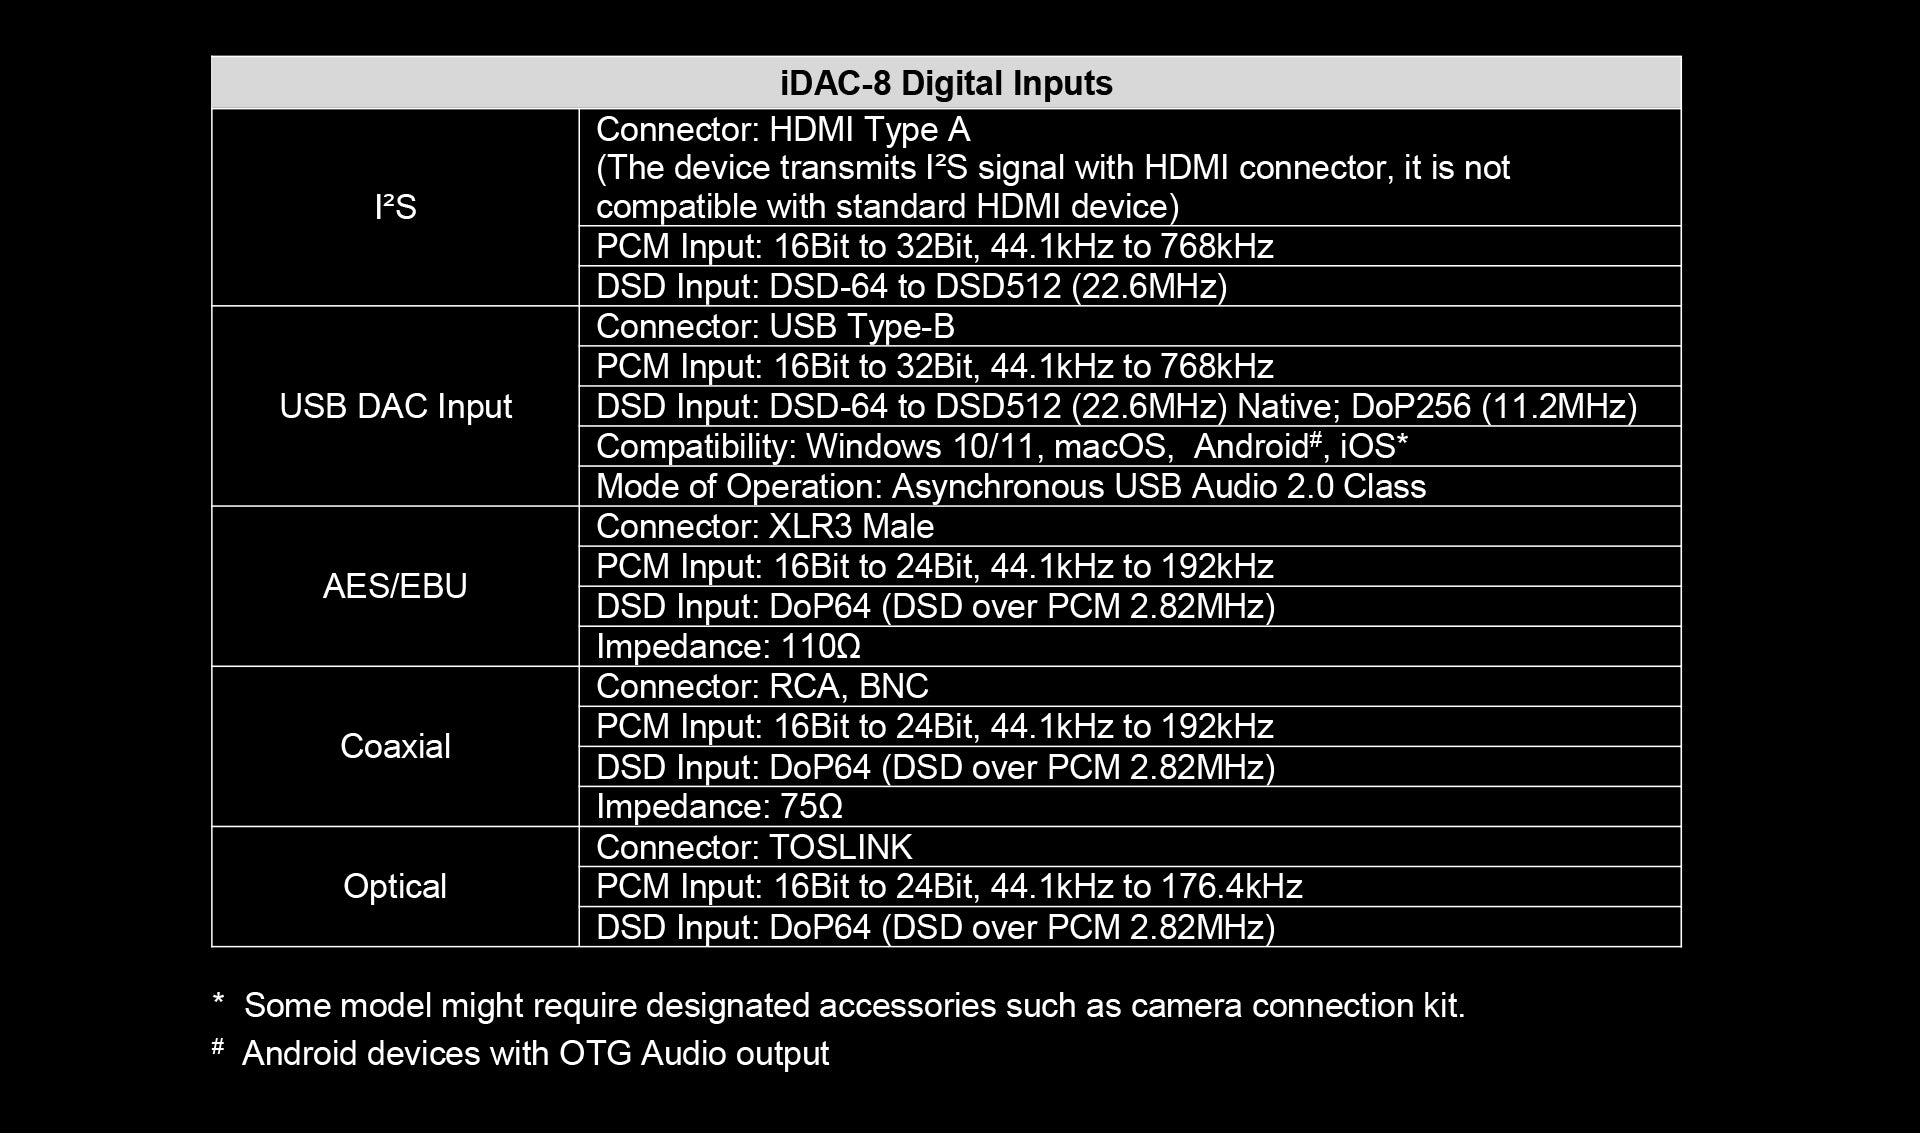 Cayin IDAC-8 Dual Timbre Digital Analog Converter - MusicTeck